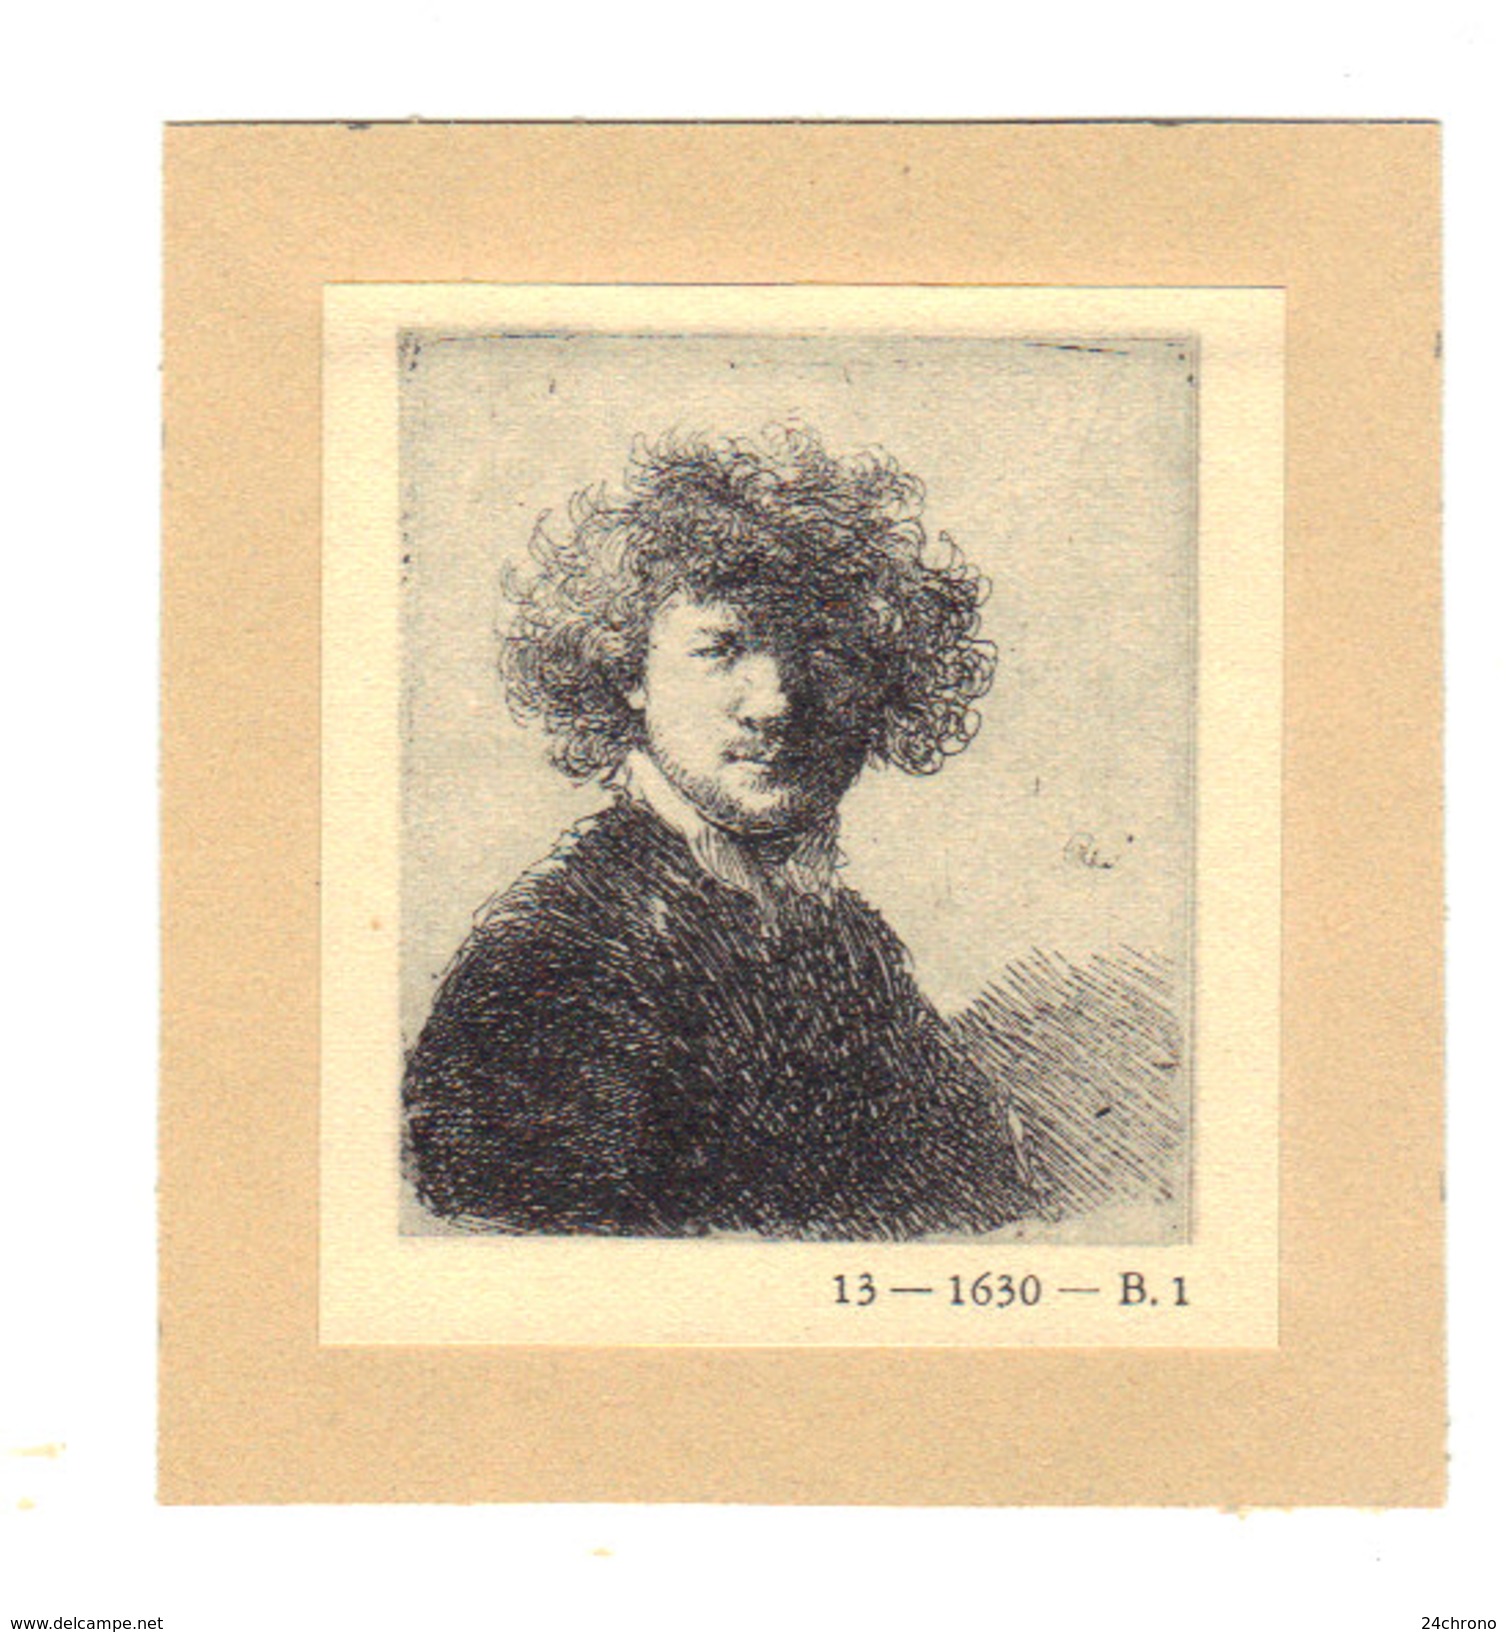 Heliogravure De Rembrandt D'apres Gravure De 1630:  Rembrandt Aux Cheveux Crepus (17-3) - Estampes & Gravures